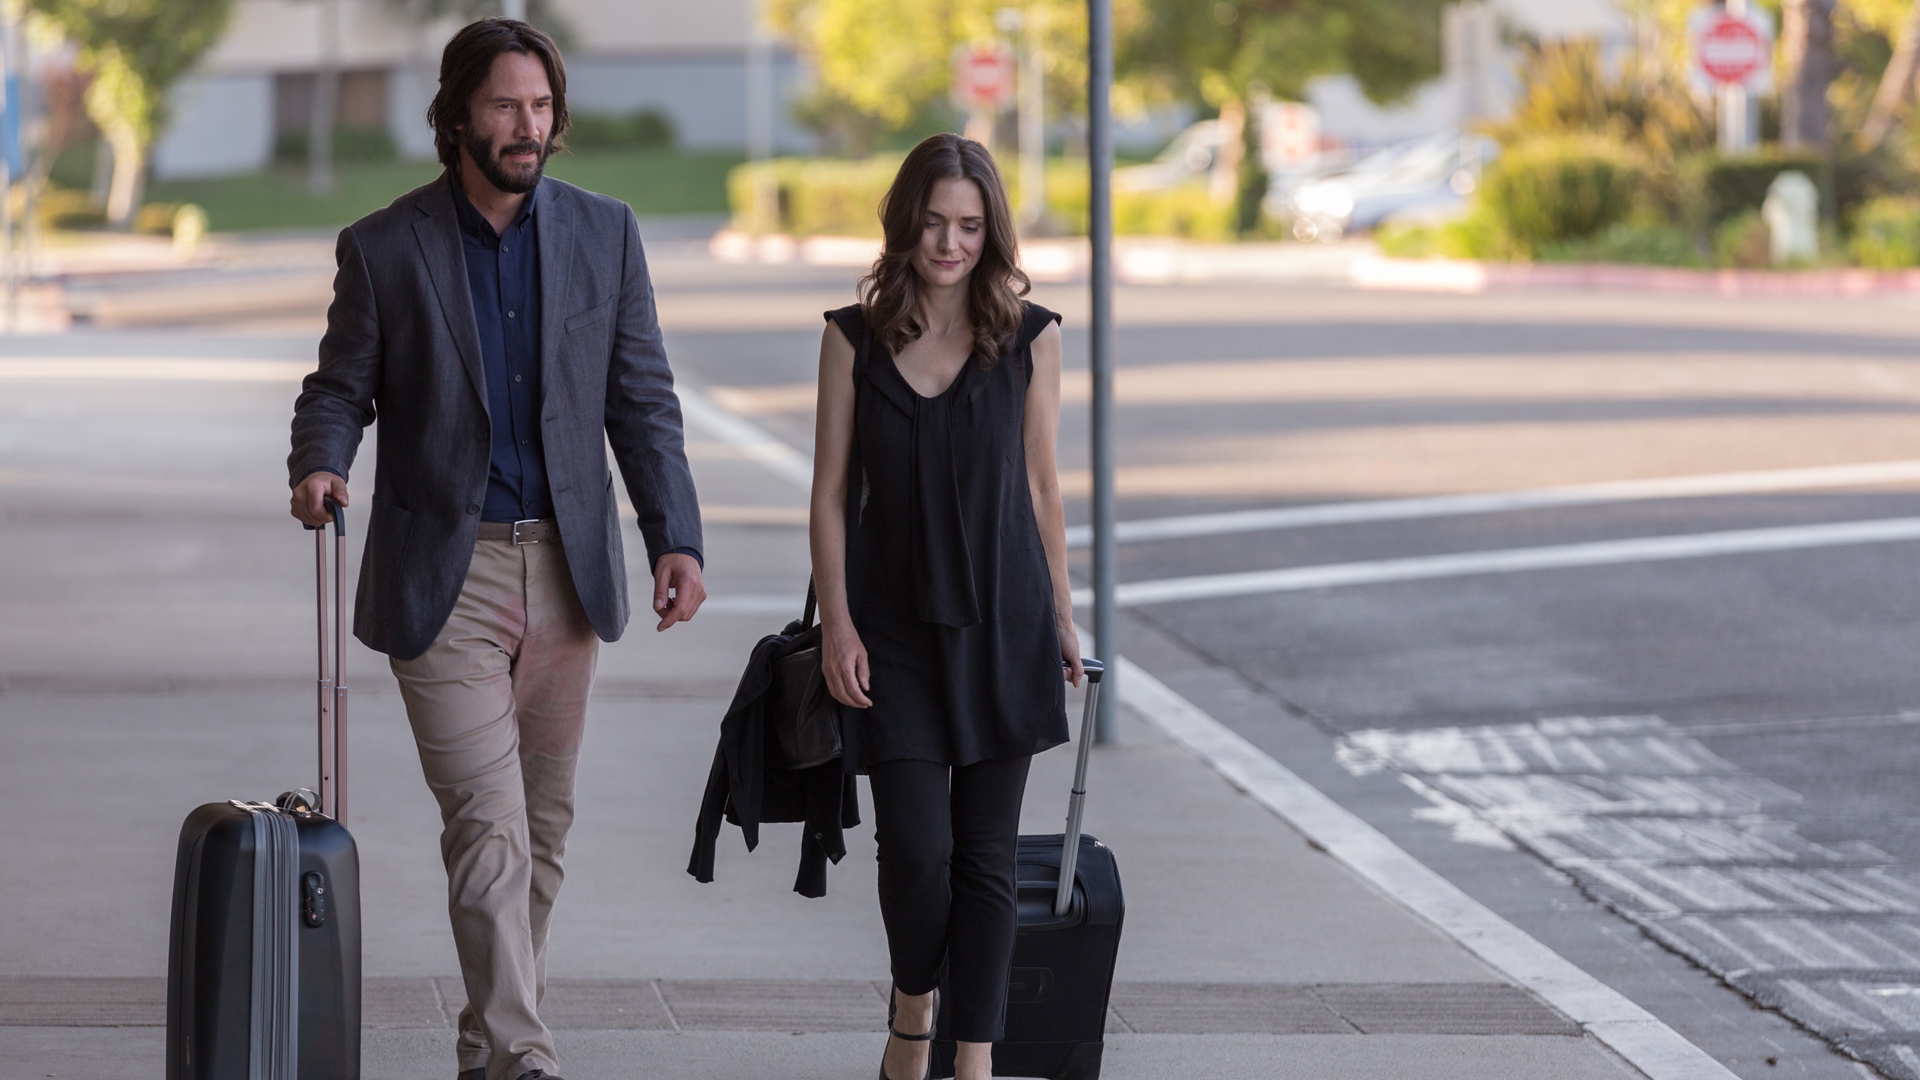 DESTINATION WEDDING: Winona Ryder und Keanu Reeves gehen nebeneinander auf einem Bürgersteig. Sie ziehen Rollkoffer hinter sich her.